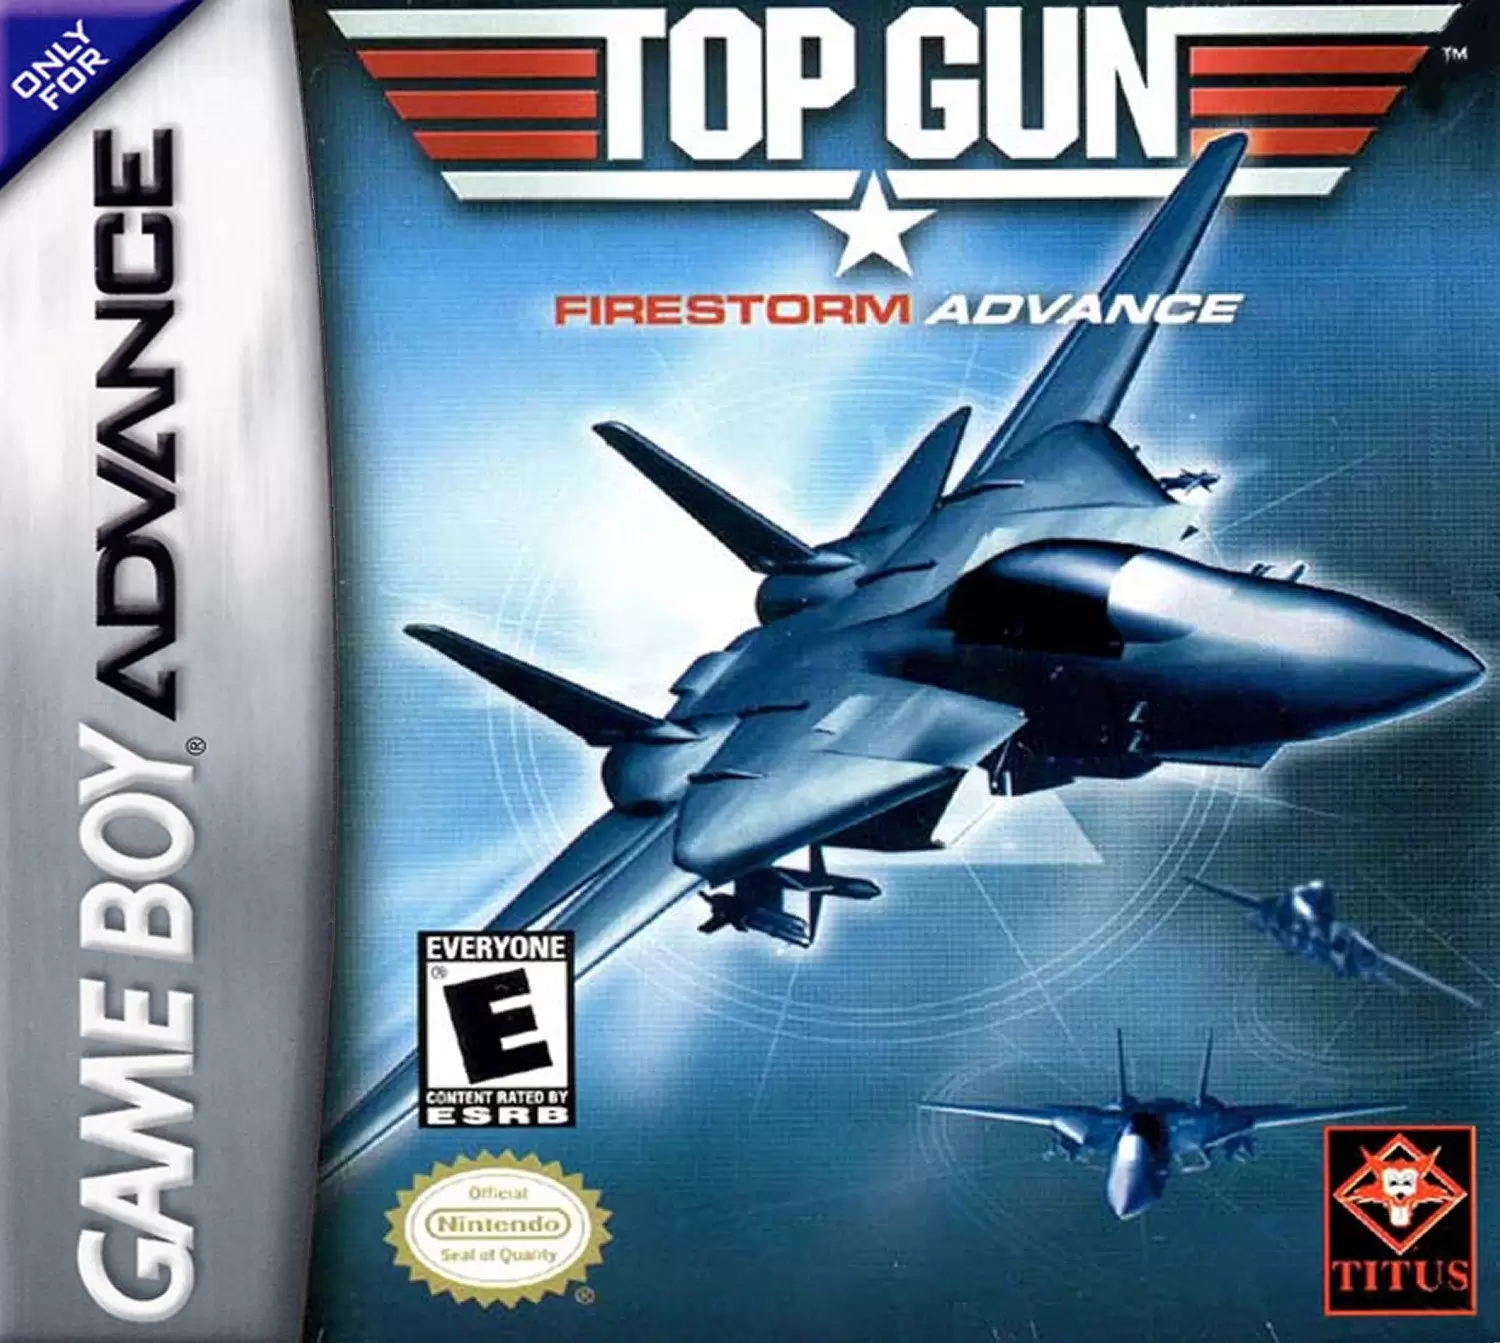 Game Boy Advance Games - Top Gun: Firestorm Advance